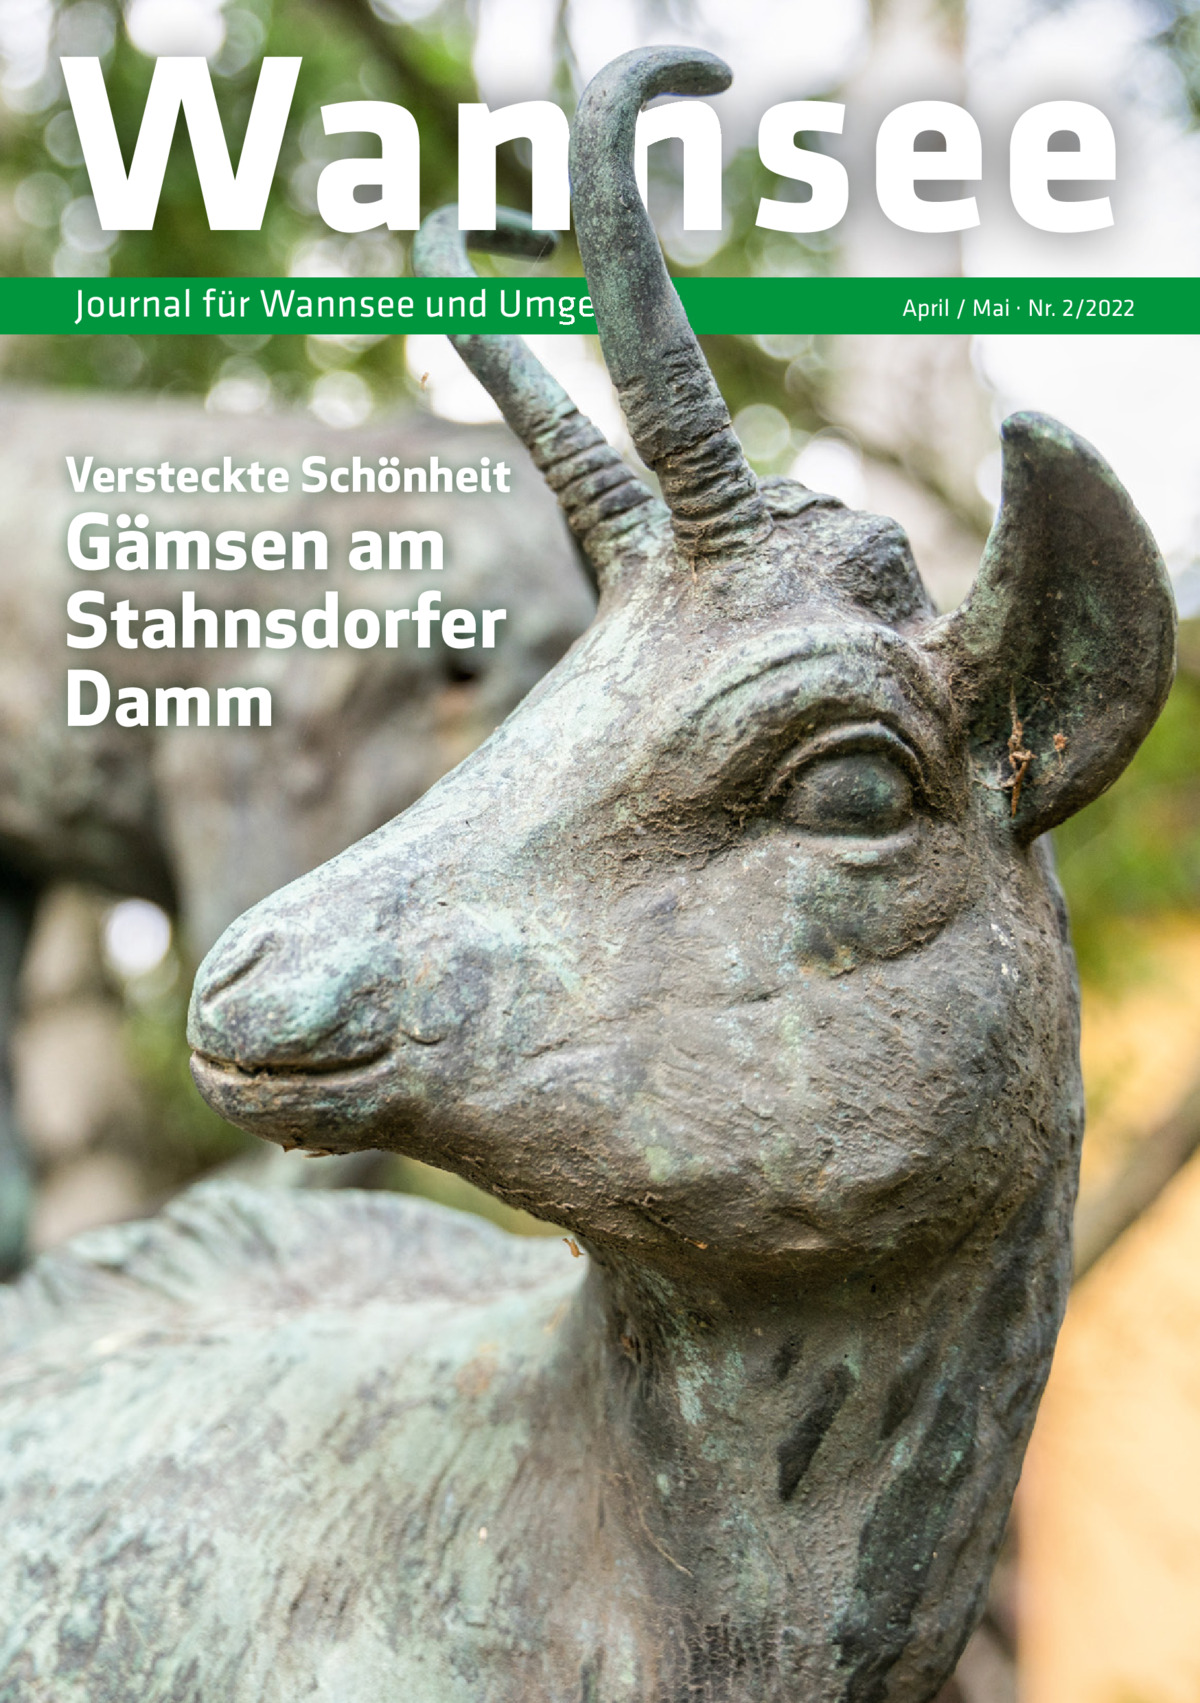 Wannsee Journal für Wannsee und Umgebung  Versteckte Schönheit  Gämsen am Stahnsdorfer Damm  April / Mai · Nr. 2/2022